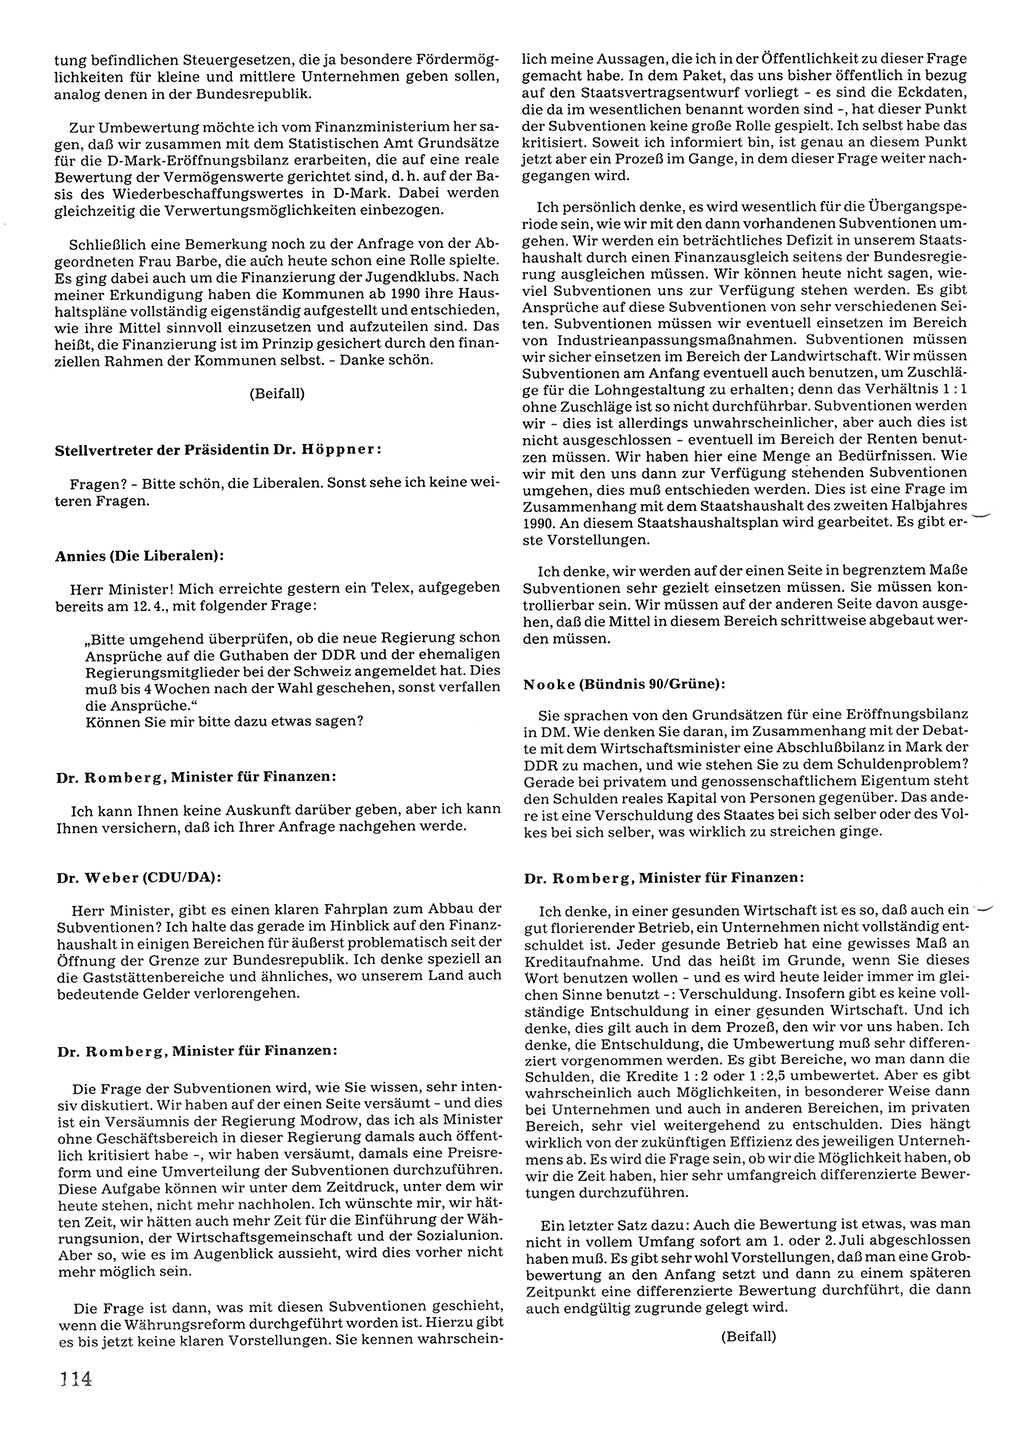 Tagungen der Volkskammer (VK) der Deutschen Demokratischen Republik (DDR), 10. Wahlperiode 1990, Seite 114 (VK. DDR 10. WP. 1990, Prot. Tg. 1-38, 5.4.-2.10.1990, S. 114)